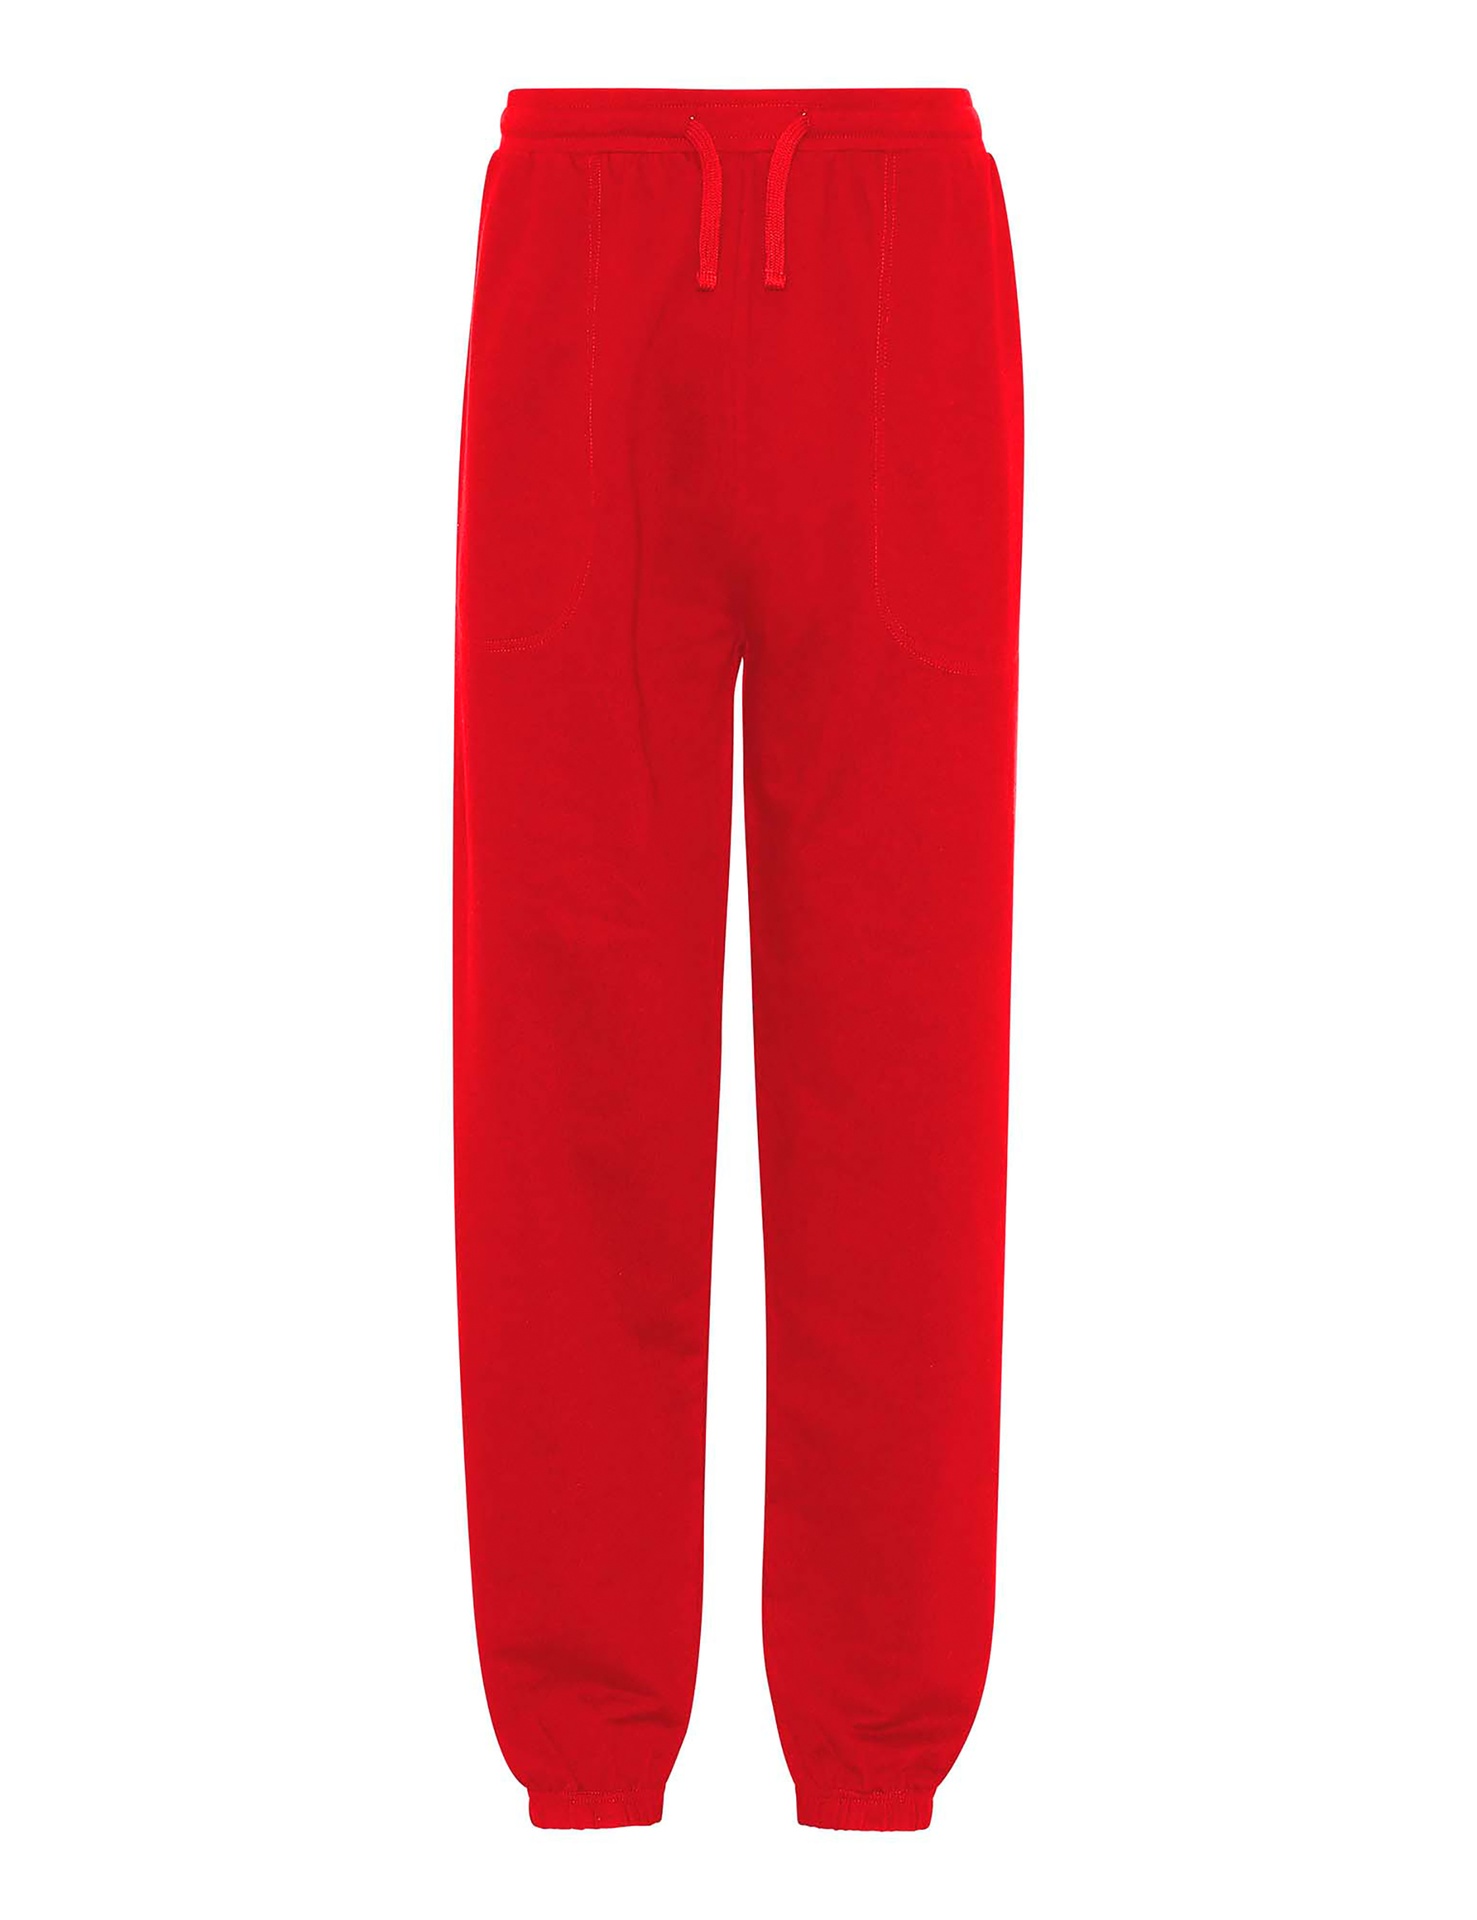 [PR/03714] Unisex Sweatpants W. Elastic Cuff (Red 05, S)